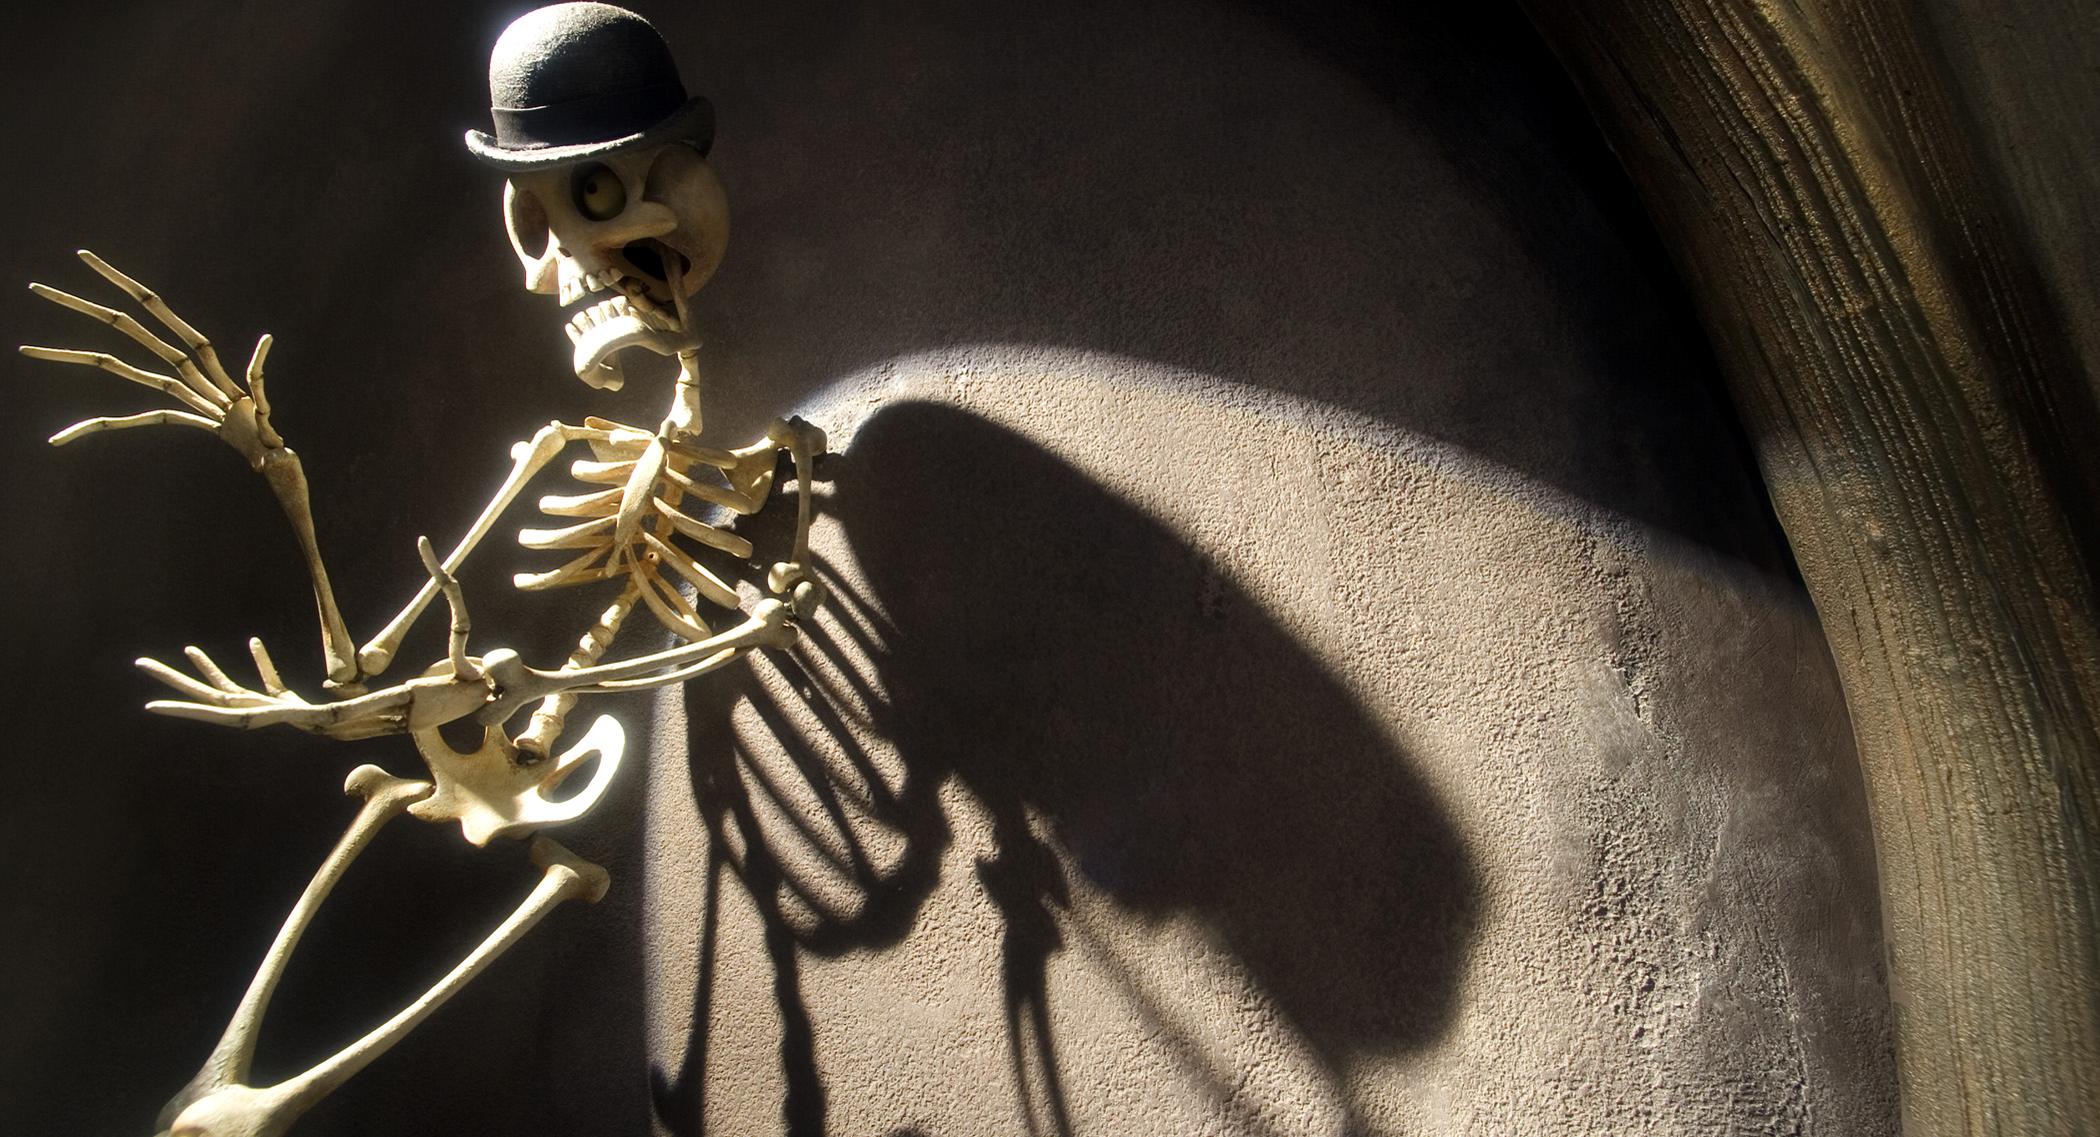 skeletons, Corpse Bride, hats - desktop wallpaper